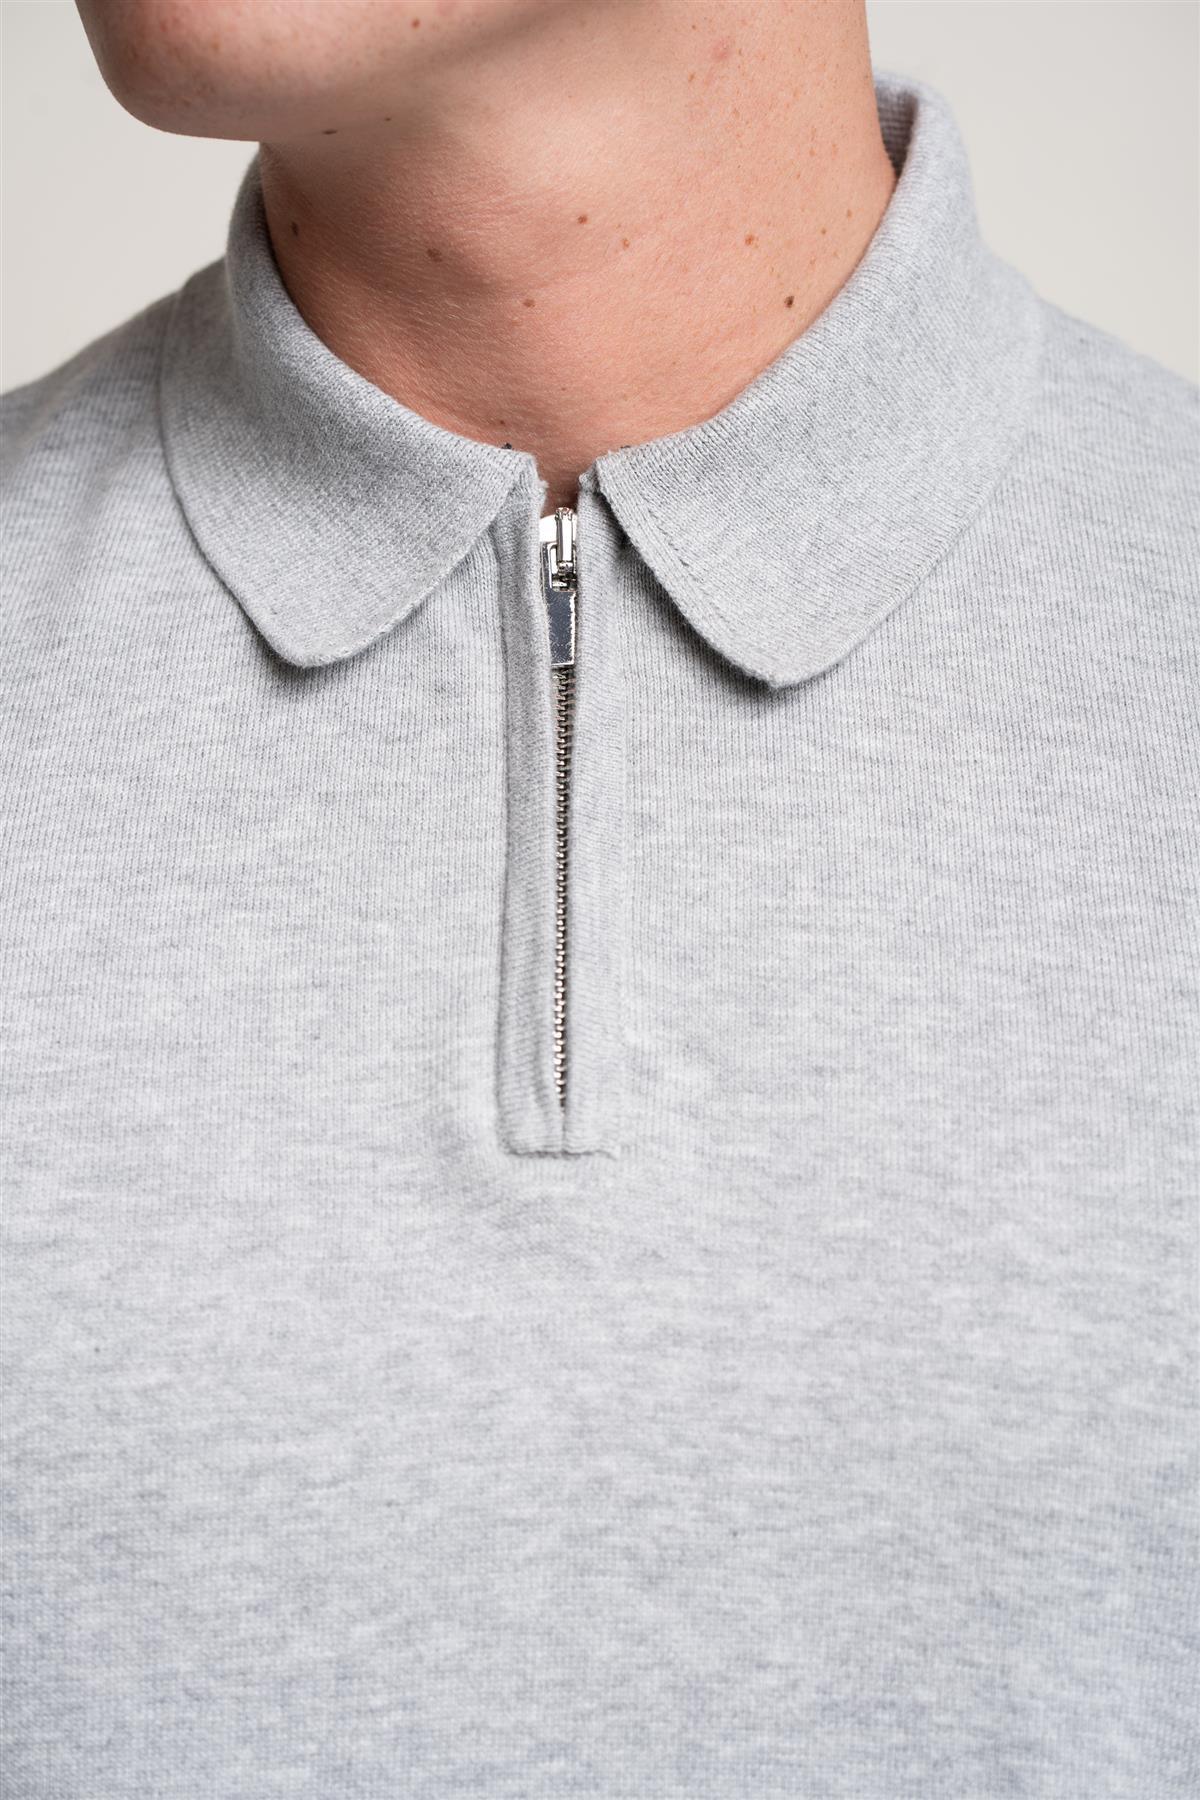 Falcao grey quarter zip jumper front detail